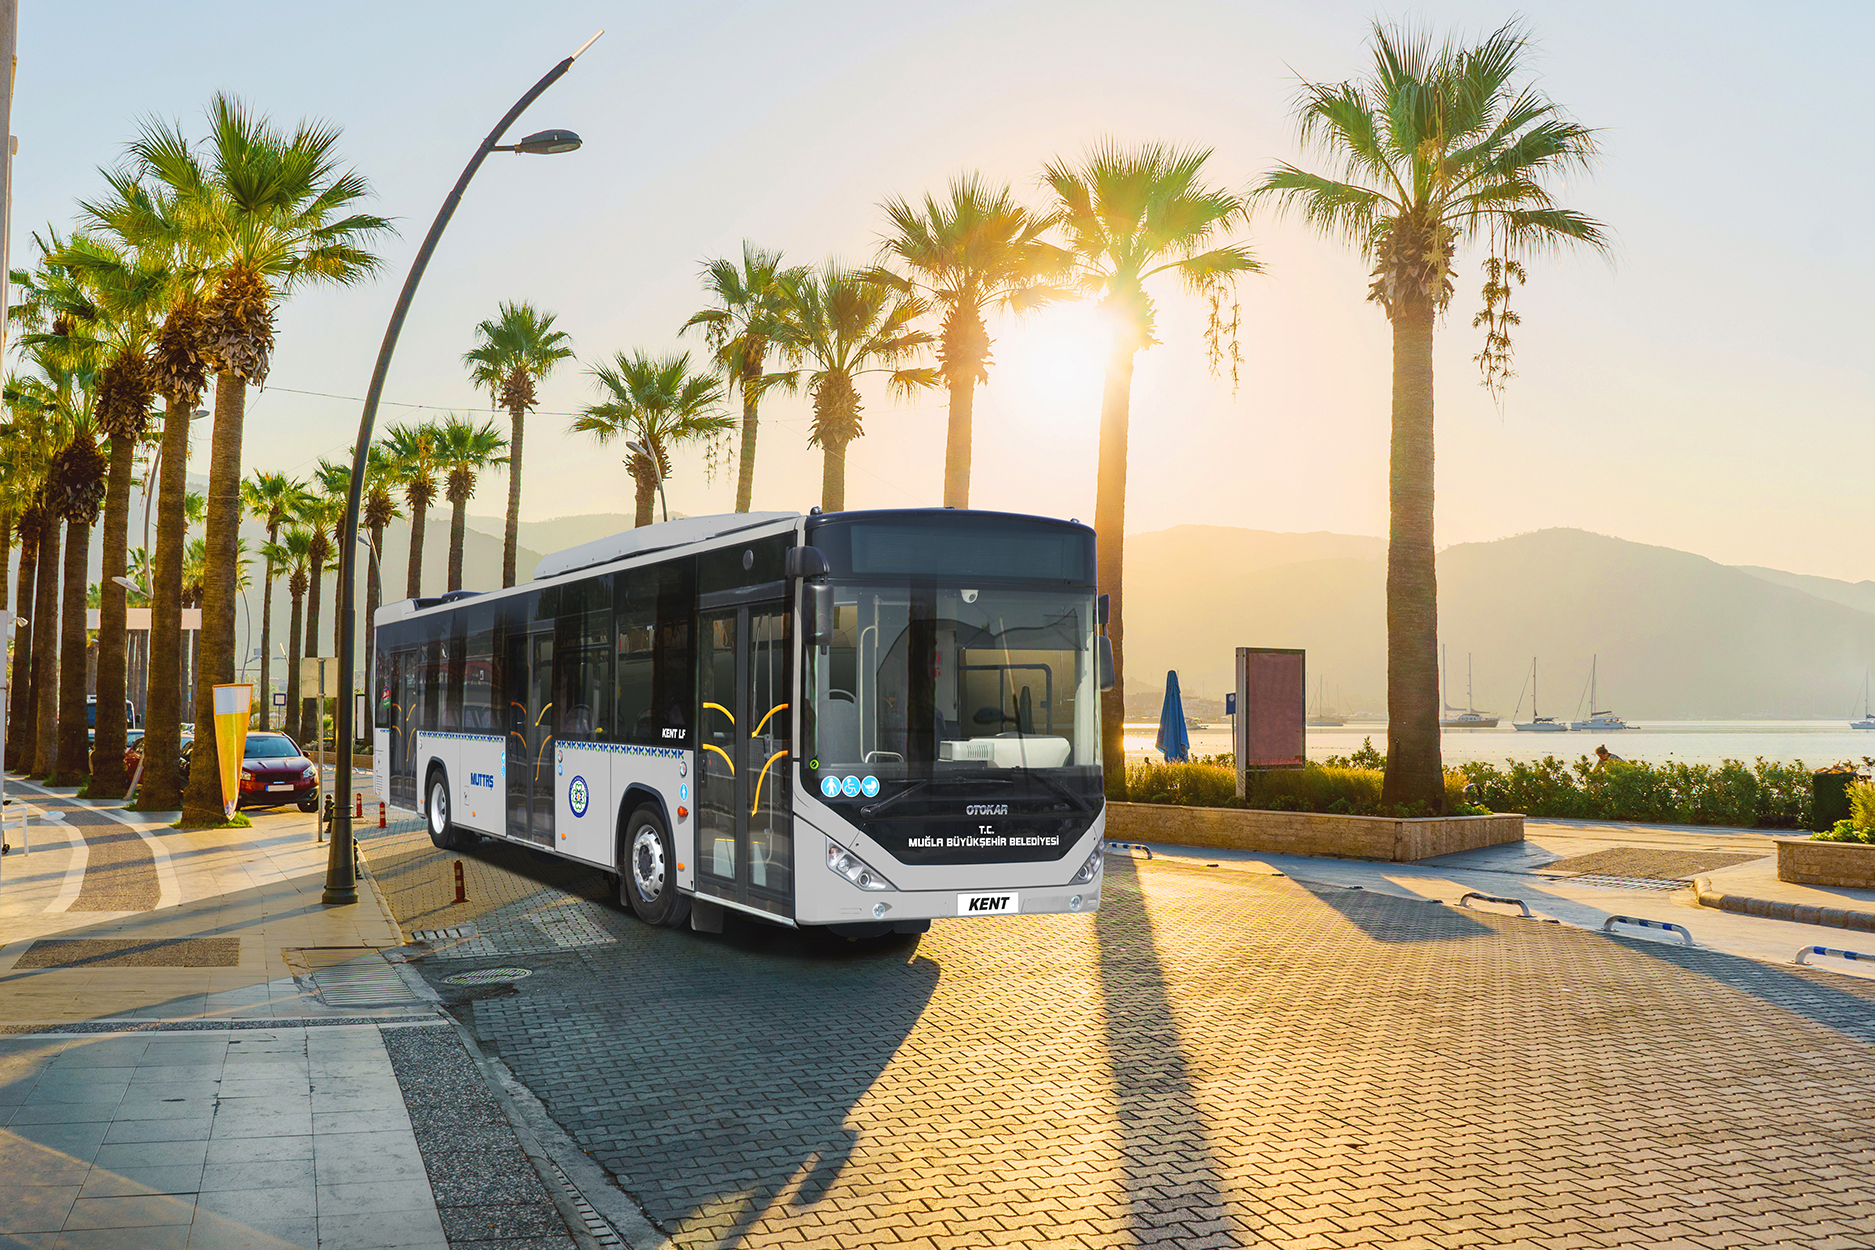 Muğla Büyükşehir Belediyesi’nin yeni Otokar Kent otobüsleri hizmete başladı